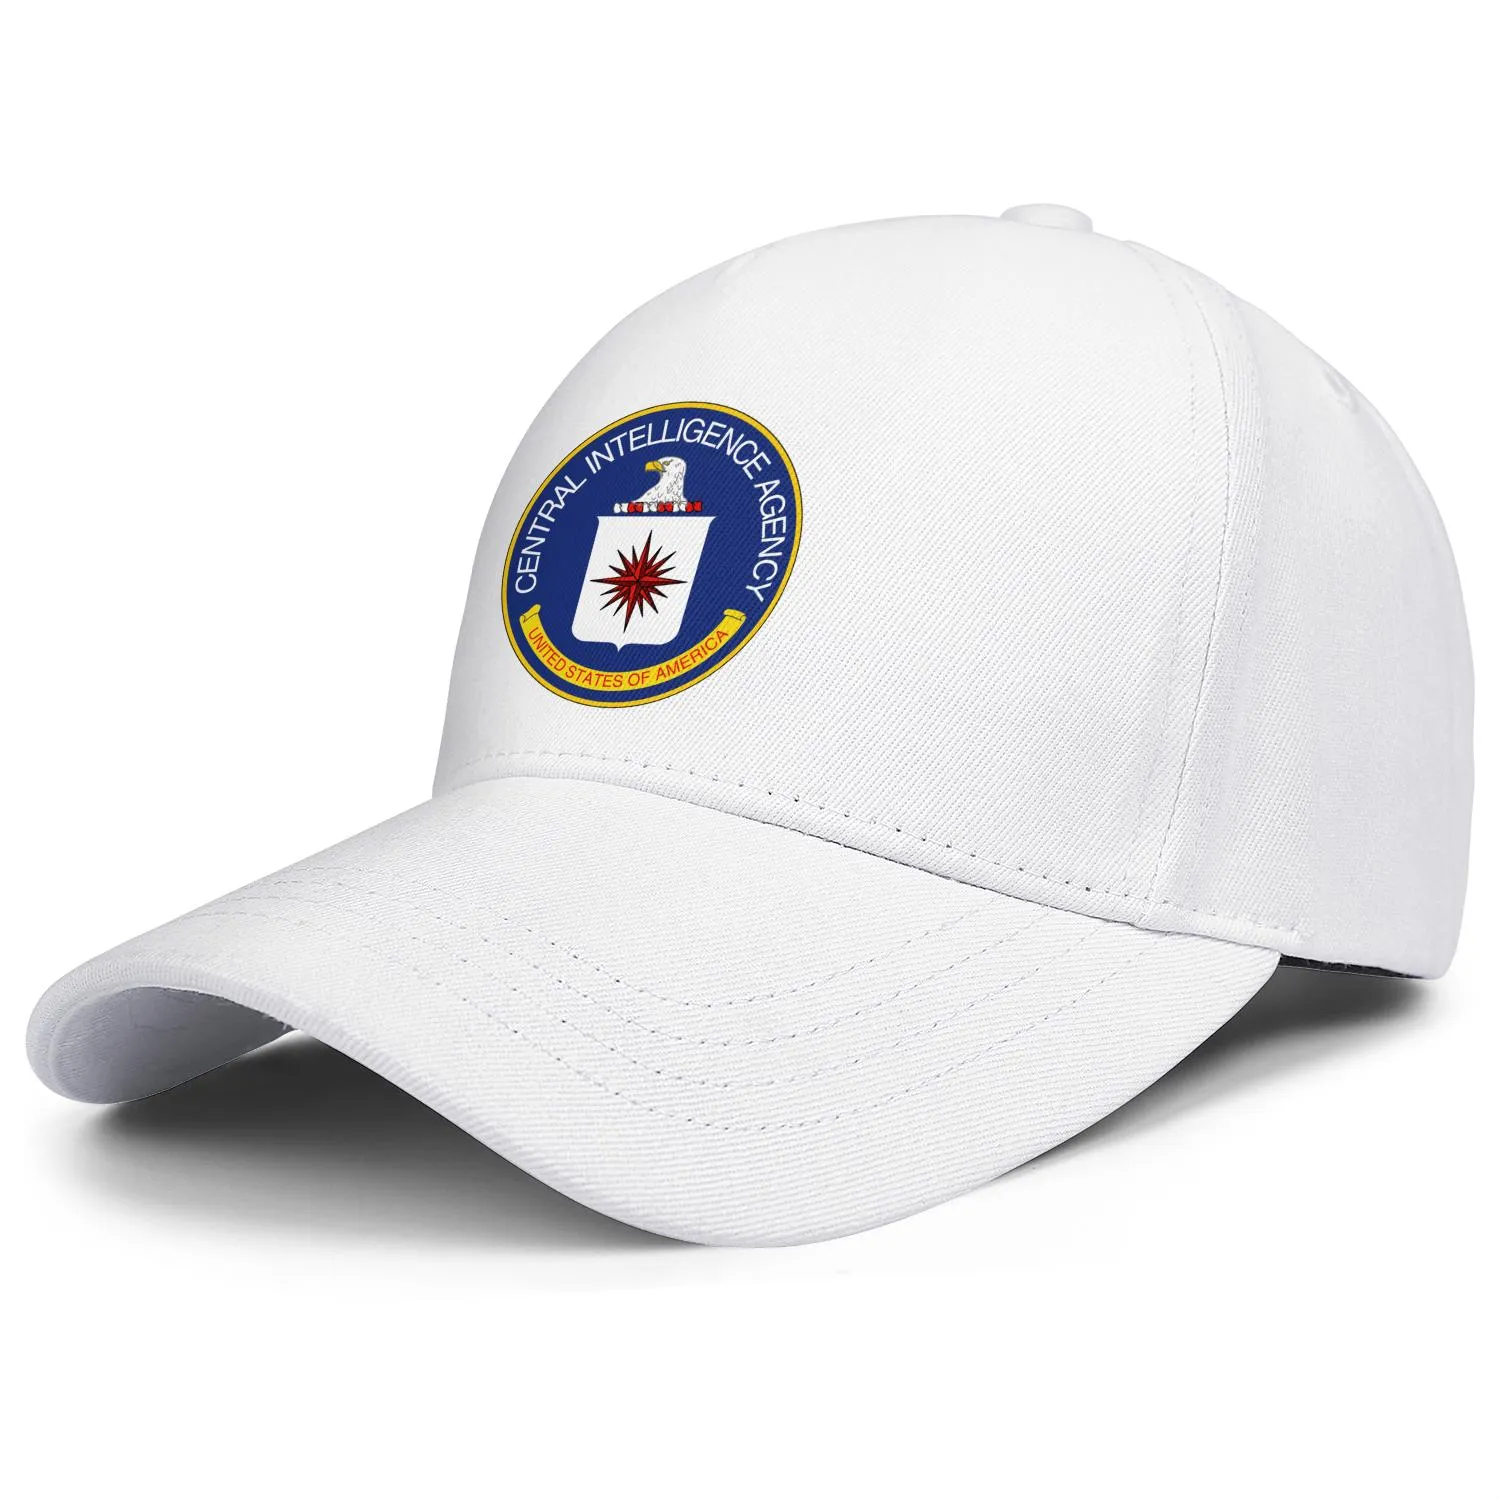 Central Intelligence Agency Logo hommes et femmes casquette de camionneur réglable cool vintage personnalisé baseballhats223m3172127